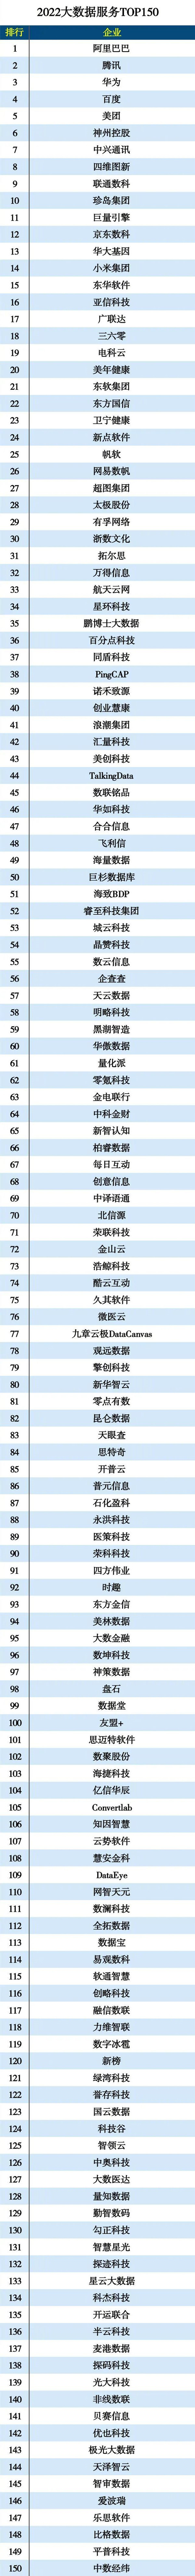 2022大数据服务排行榜公布：华为第三 百度第四